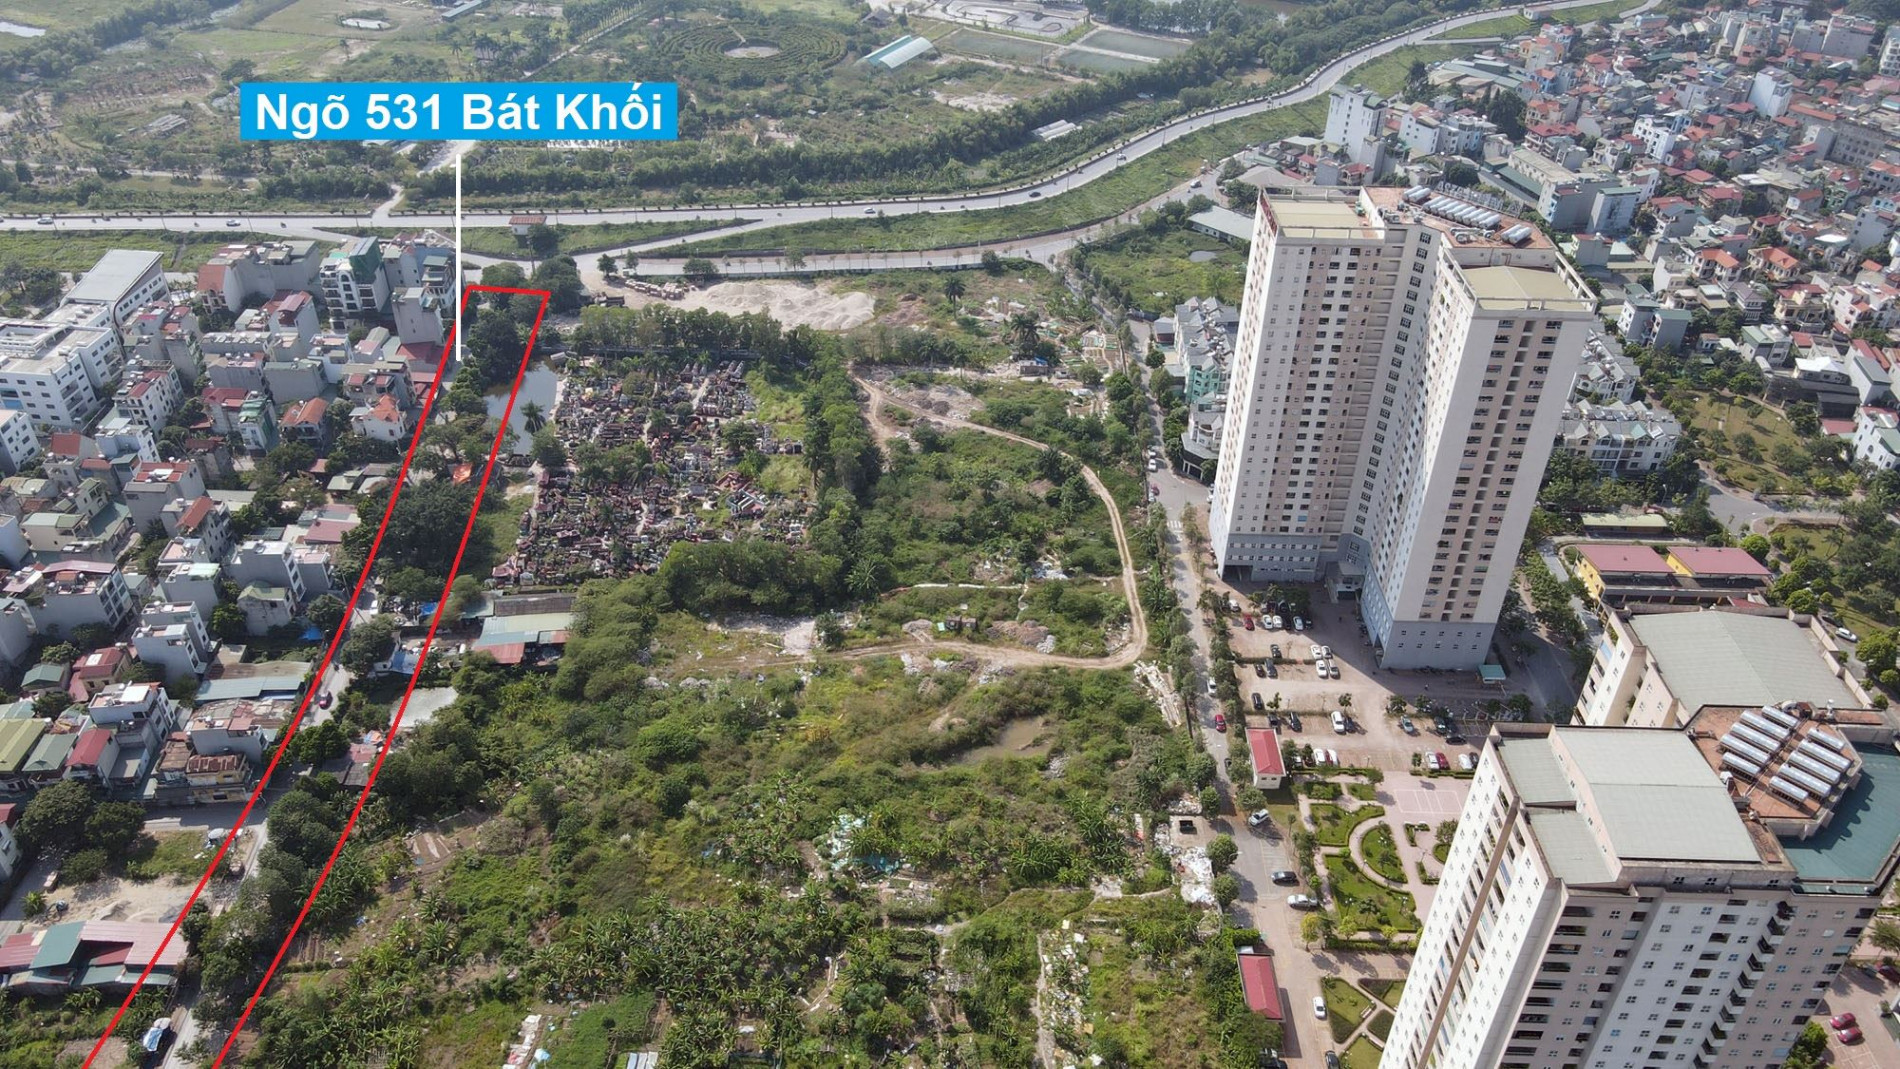 Đường sẽ mở theo quy hoạch ở phường Thạch Bàn, Long Biên, Hà Nội (phần 3)